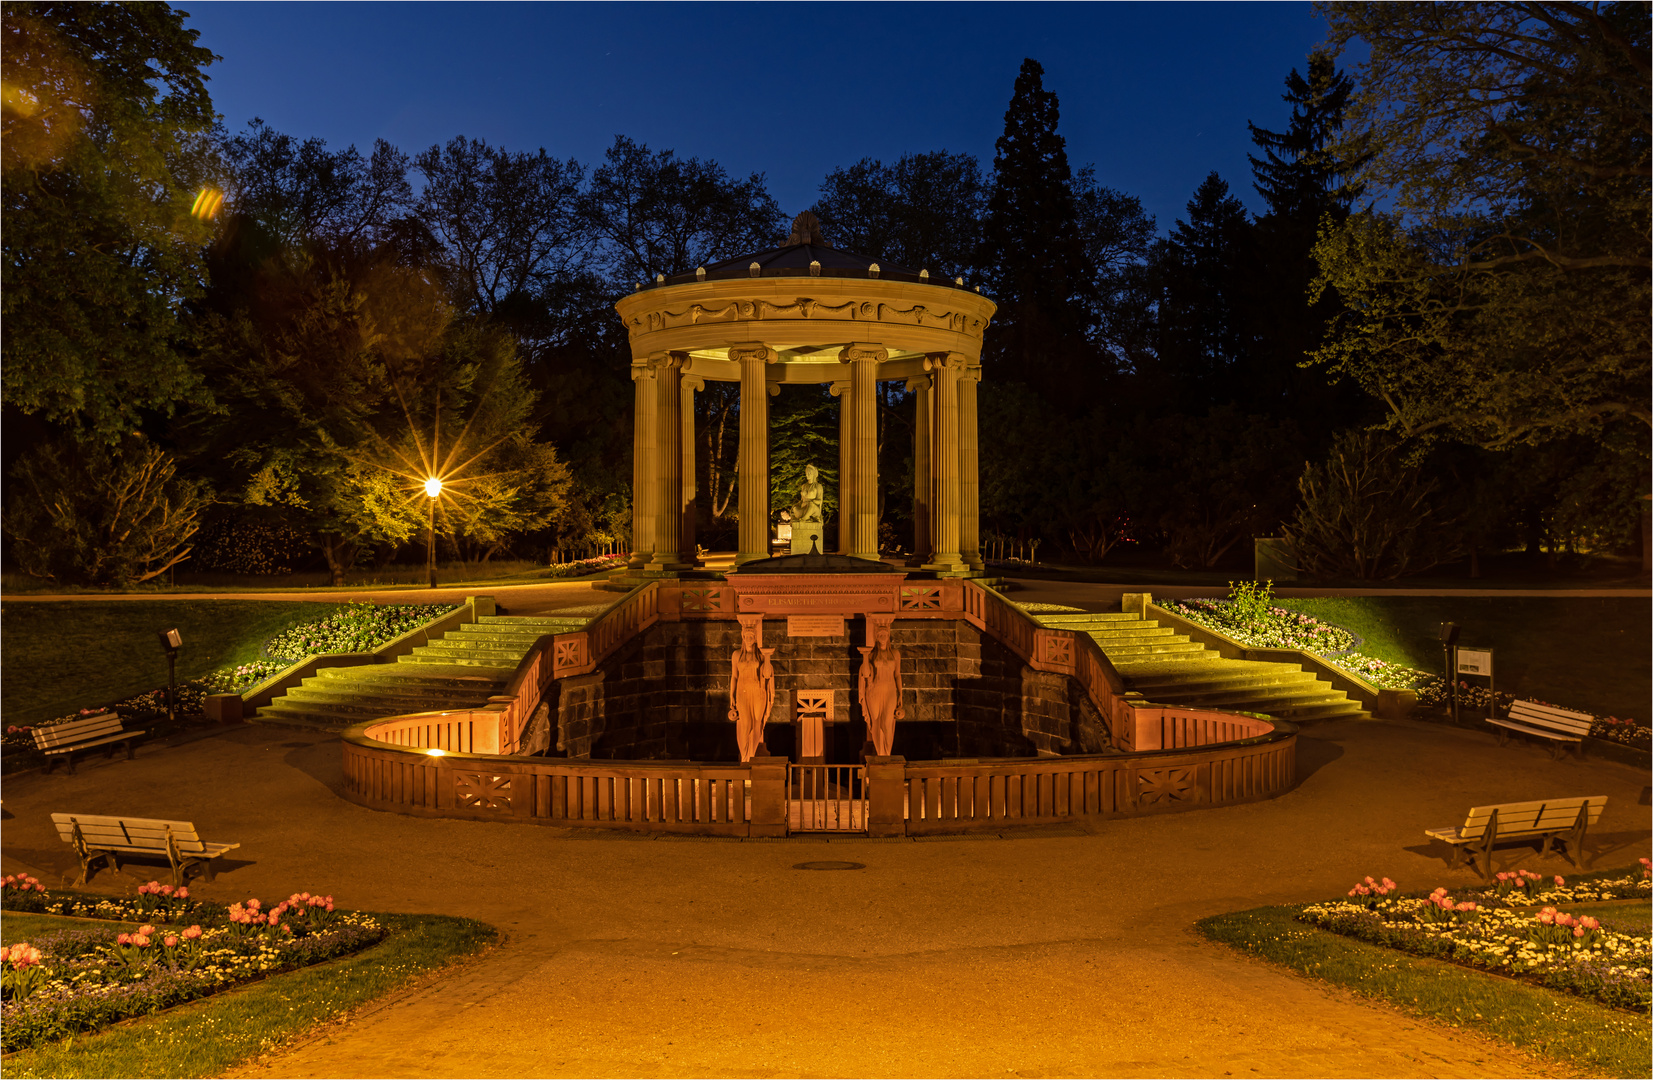 Elisabethenbrunnen by Nacht